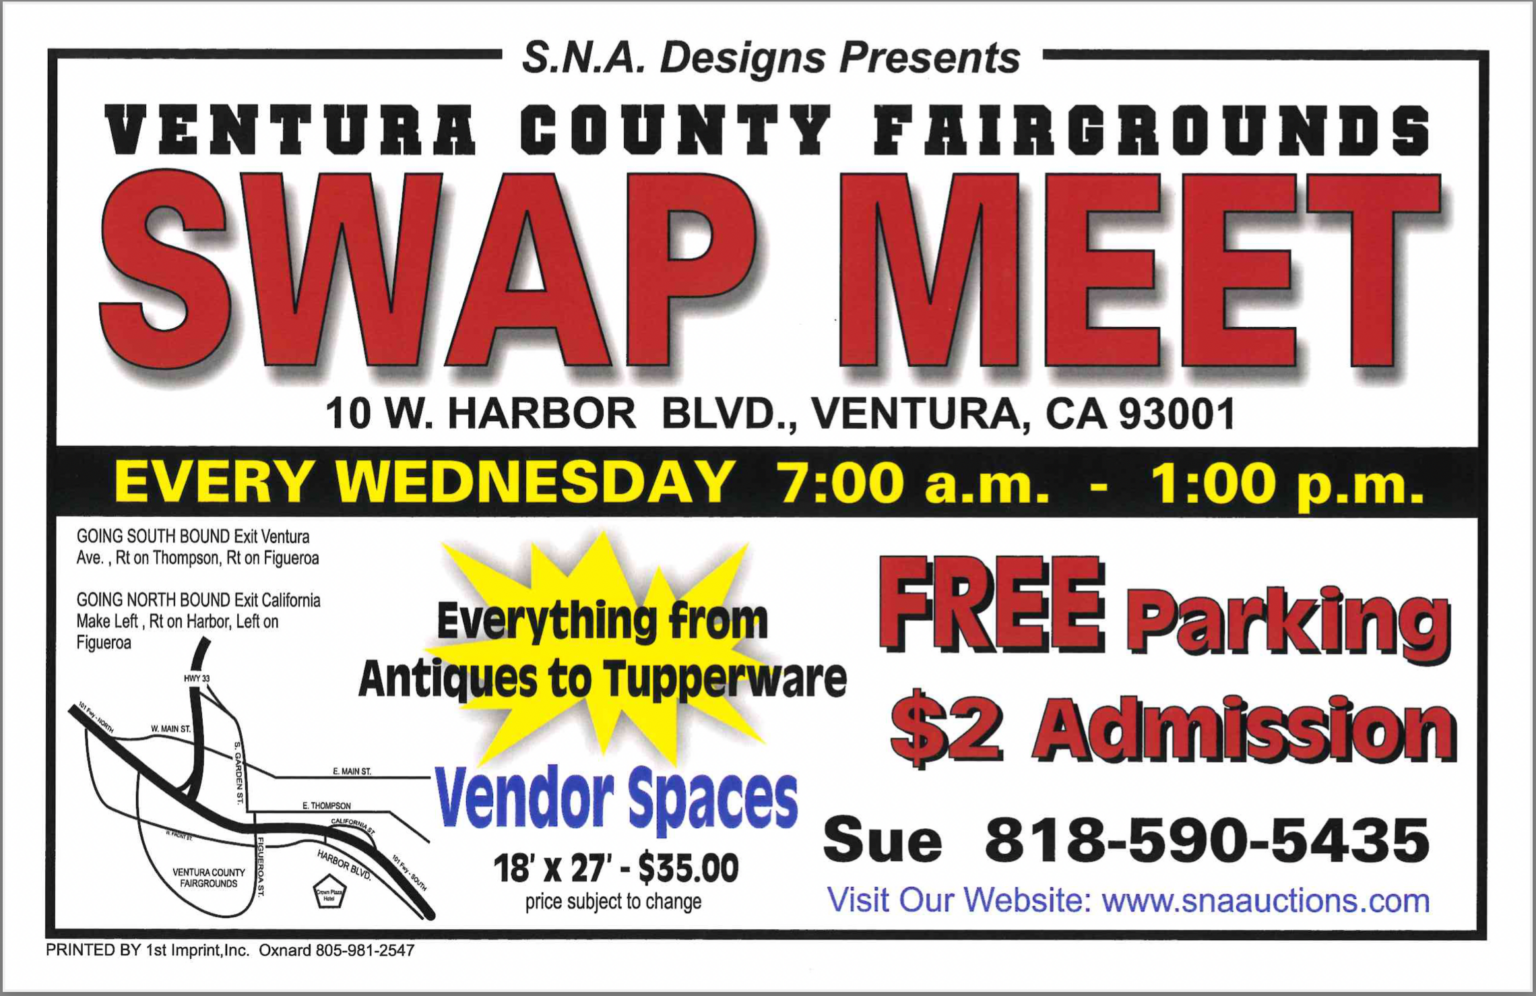 Wednesday Swap Meet Ventura County Fairgrounds